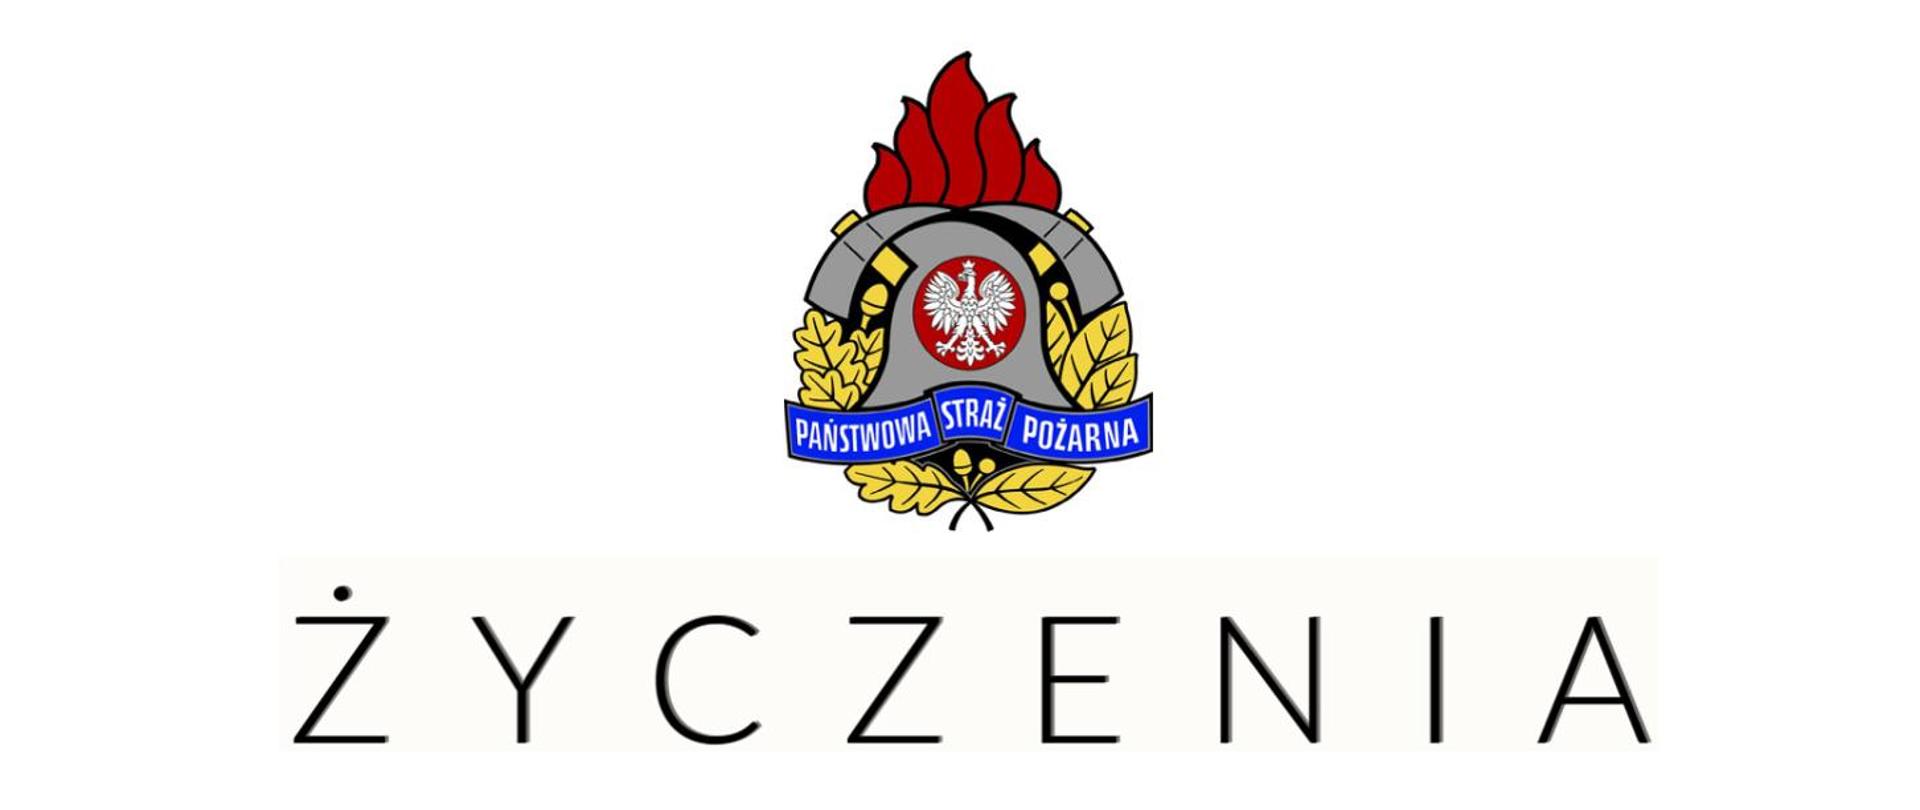 Zdjęcie przedstawia logo Państwowej Straży Pożarnej z poniżej napisem "Życzenia"